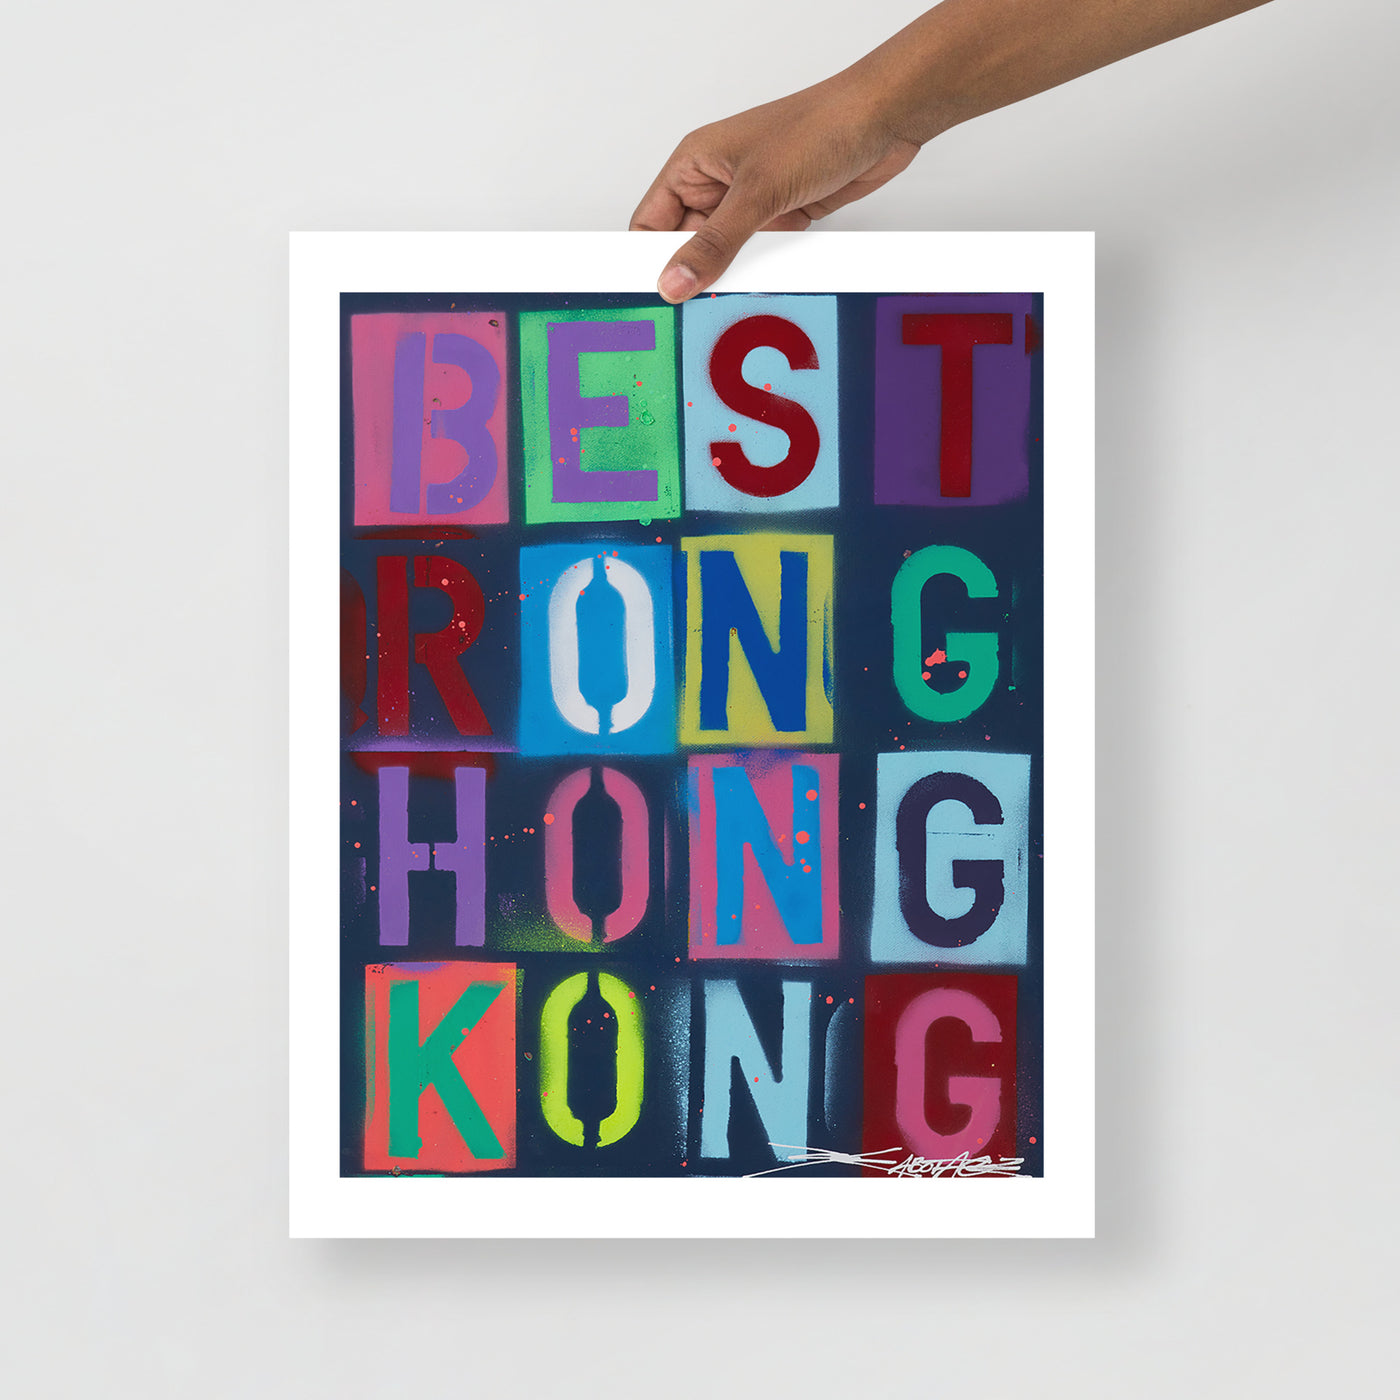 Be Strong Hong Kong - Poster Print